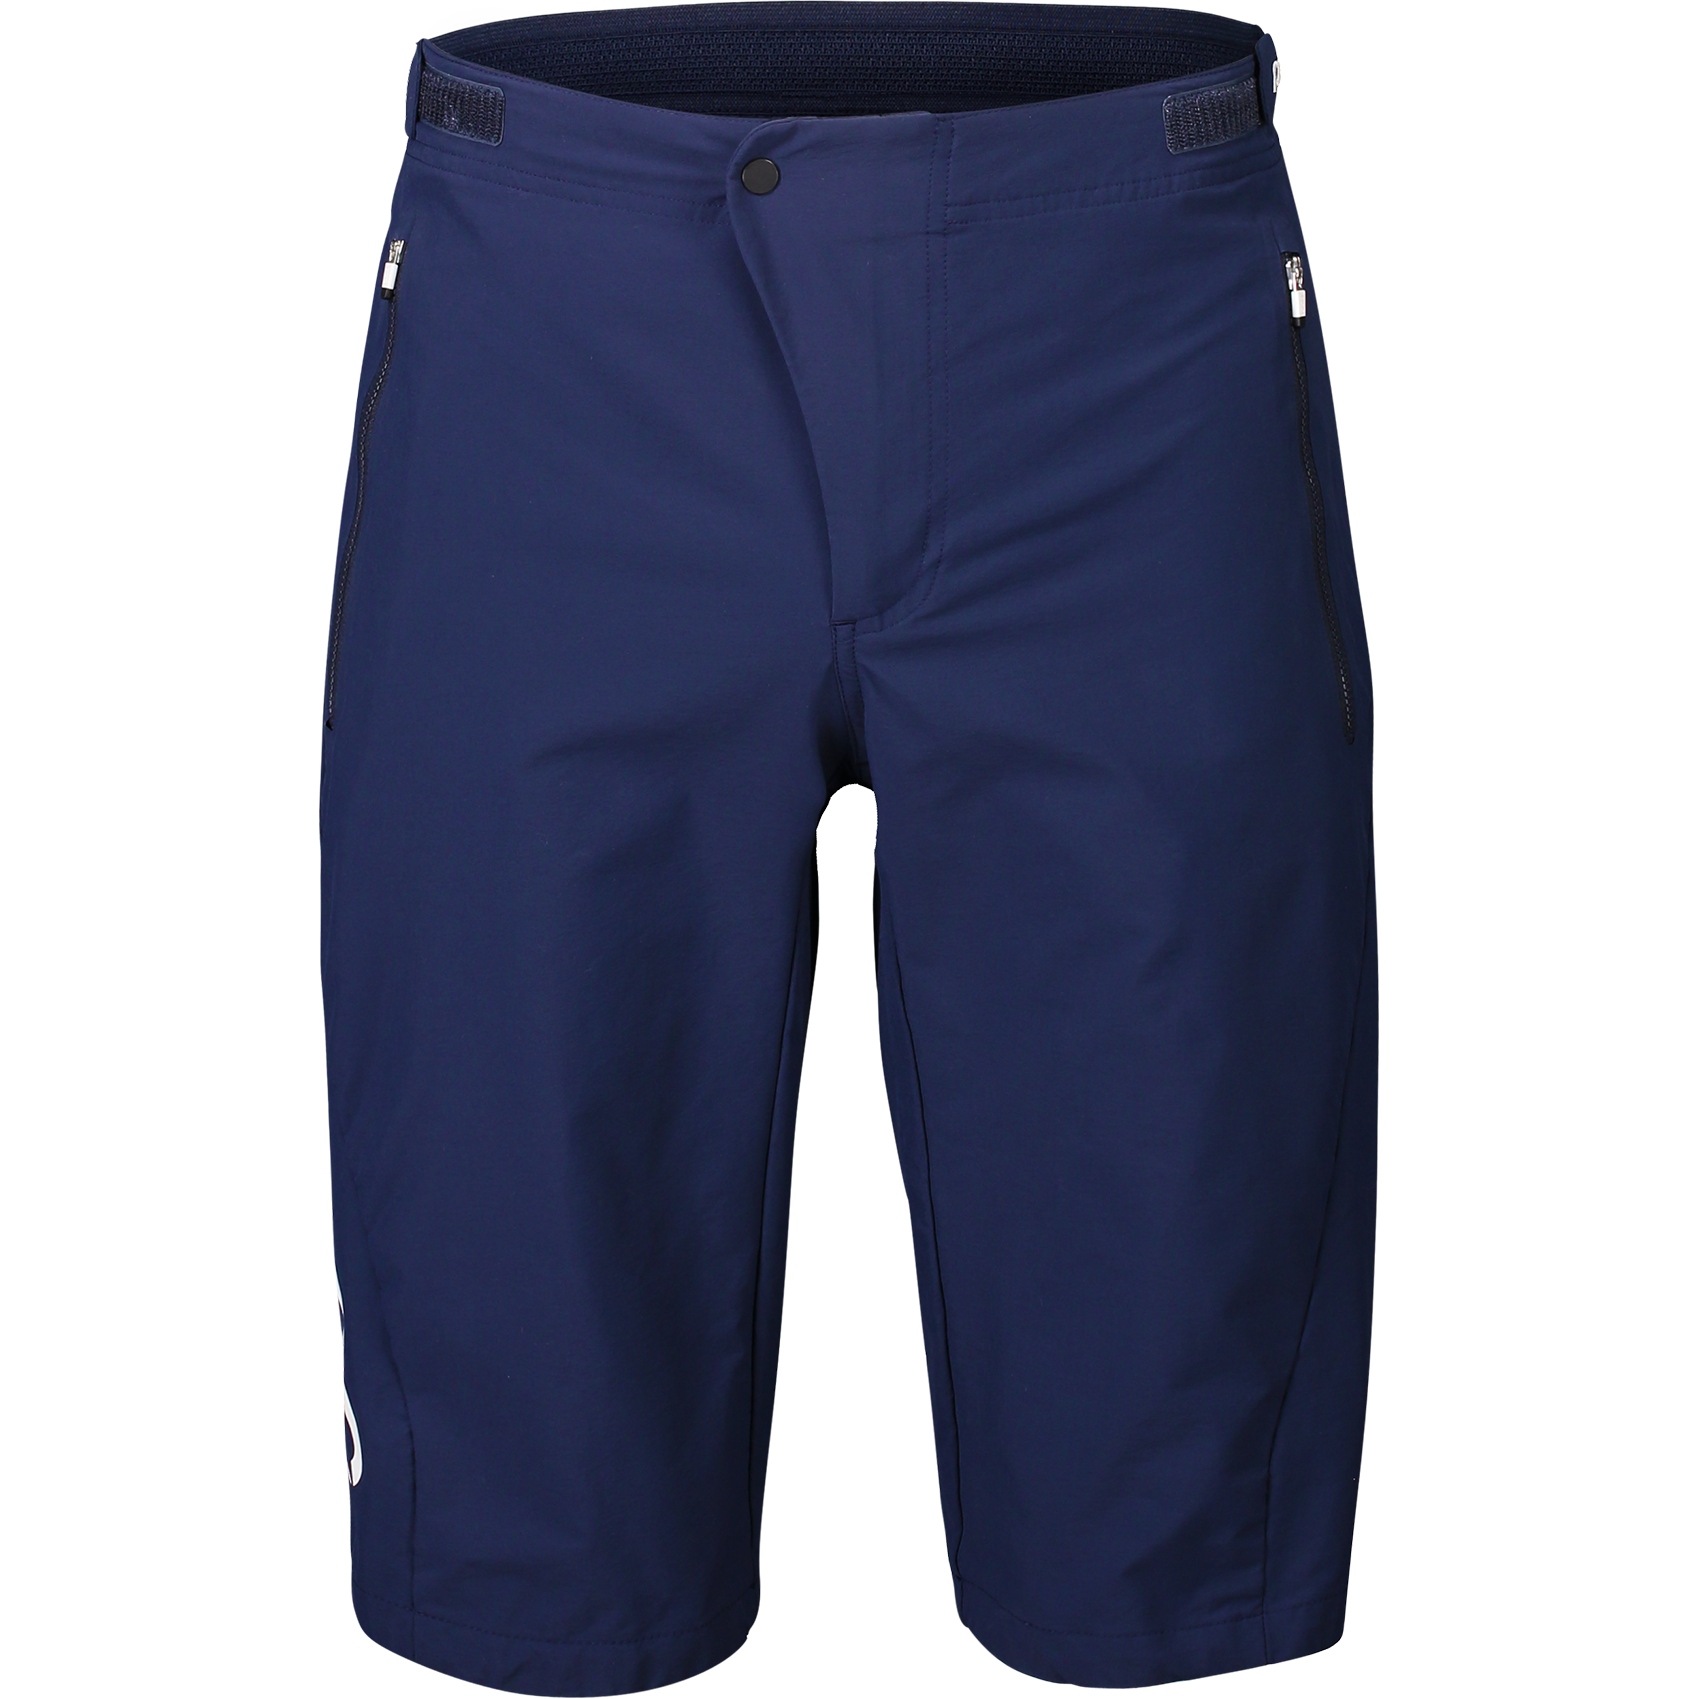 Produktbild von POC Essential Enduro Shorts - 1582 Turmaline Navy